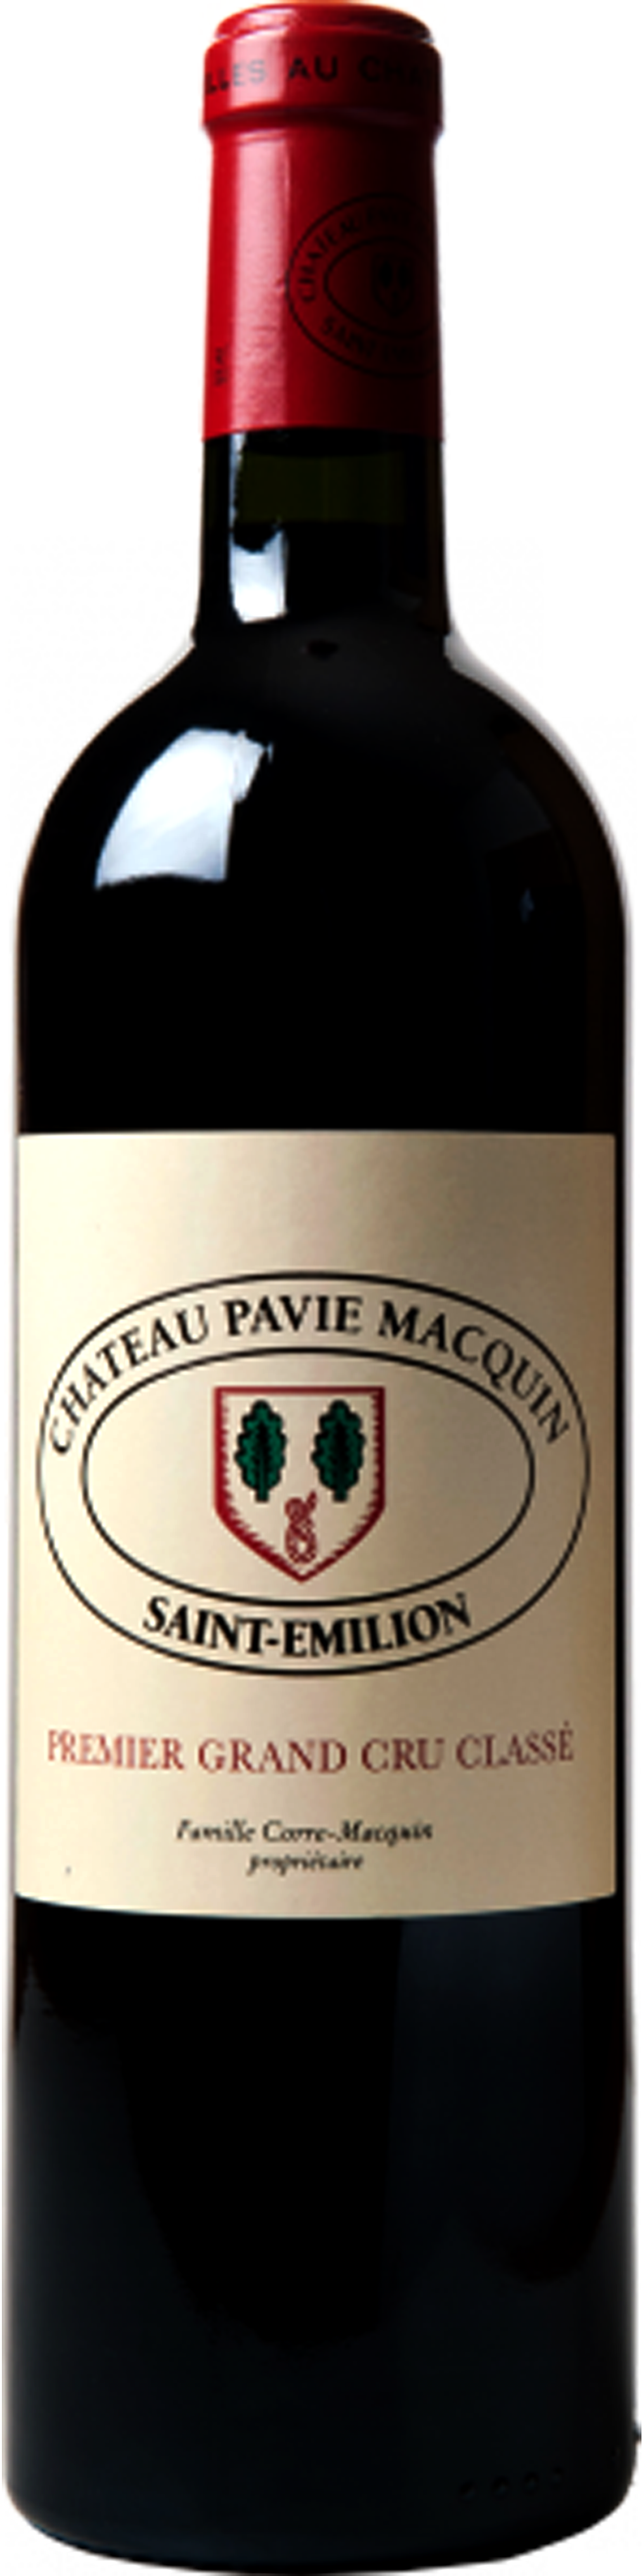 Image of product Château Pavie Macquin, Grand Cru Classé St Emilion